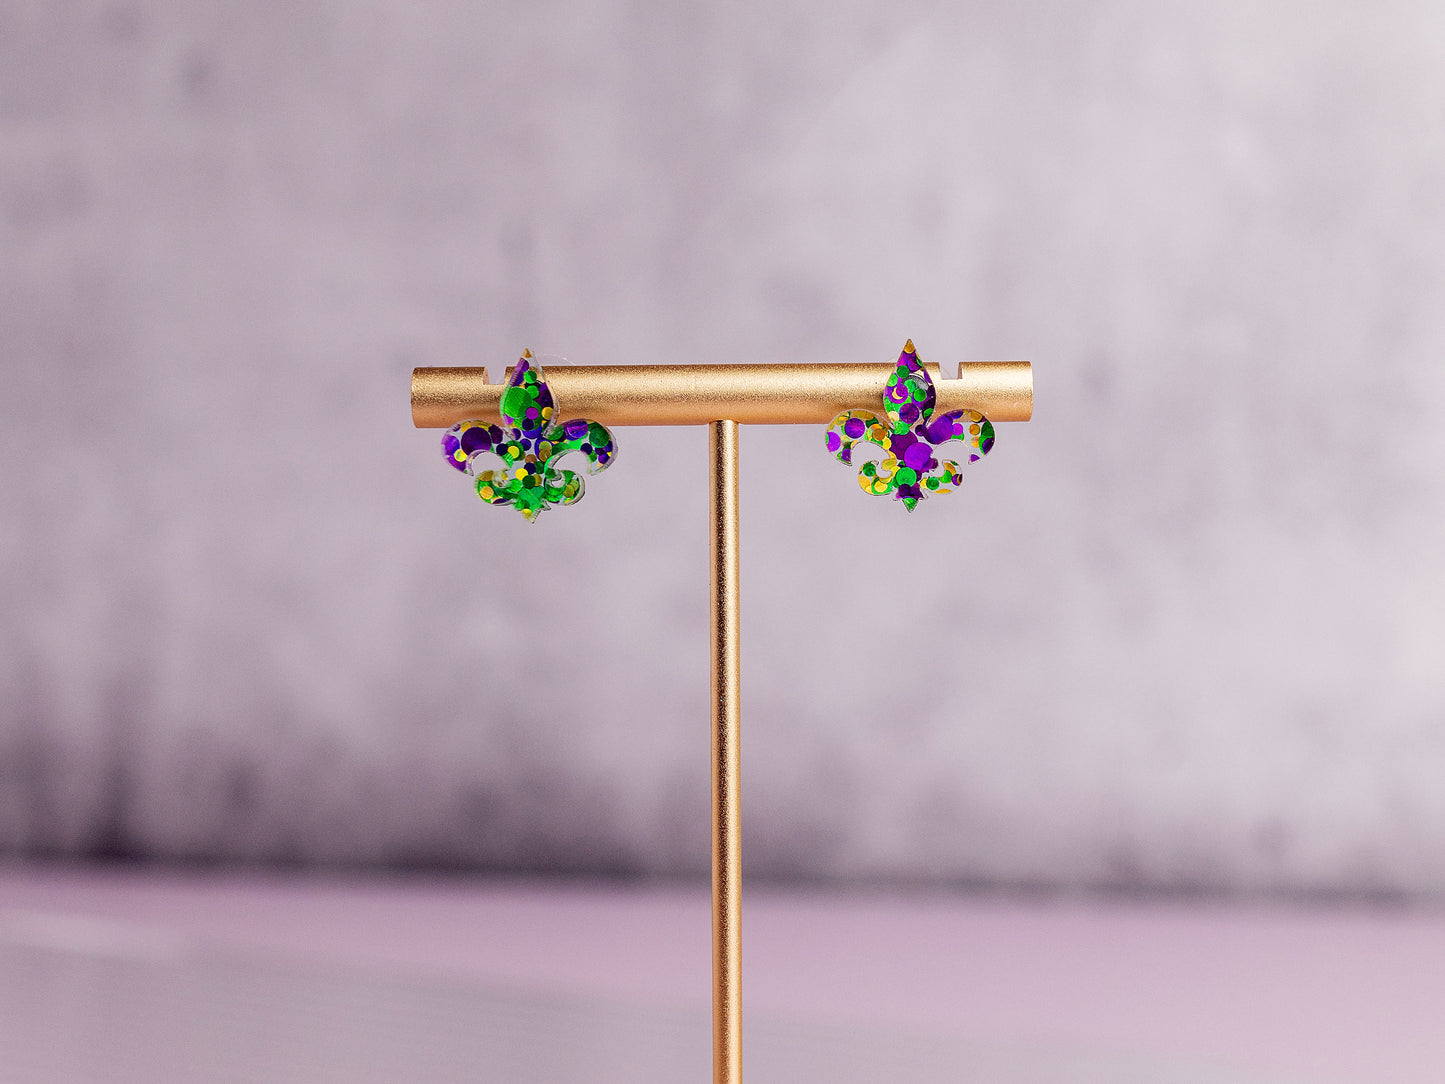 Mardi Gras Earrings - Glitter Fleur De Lis Posts